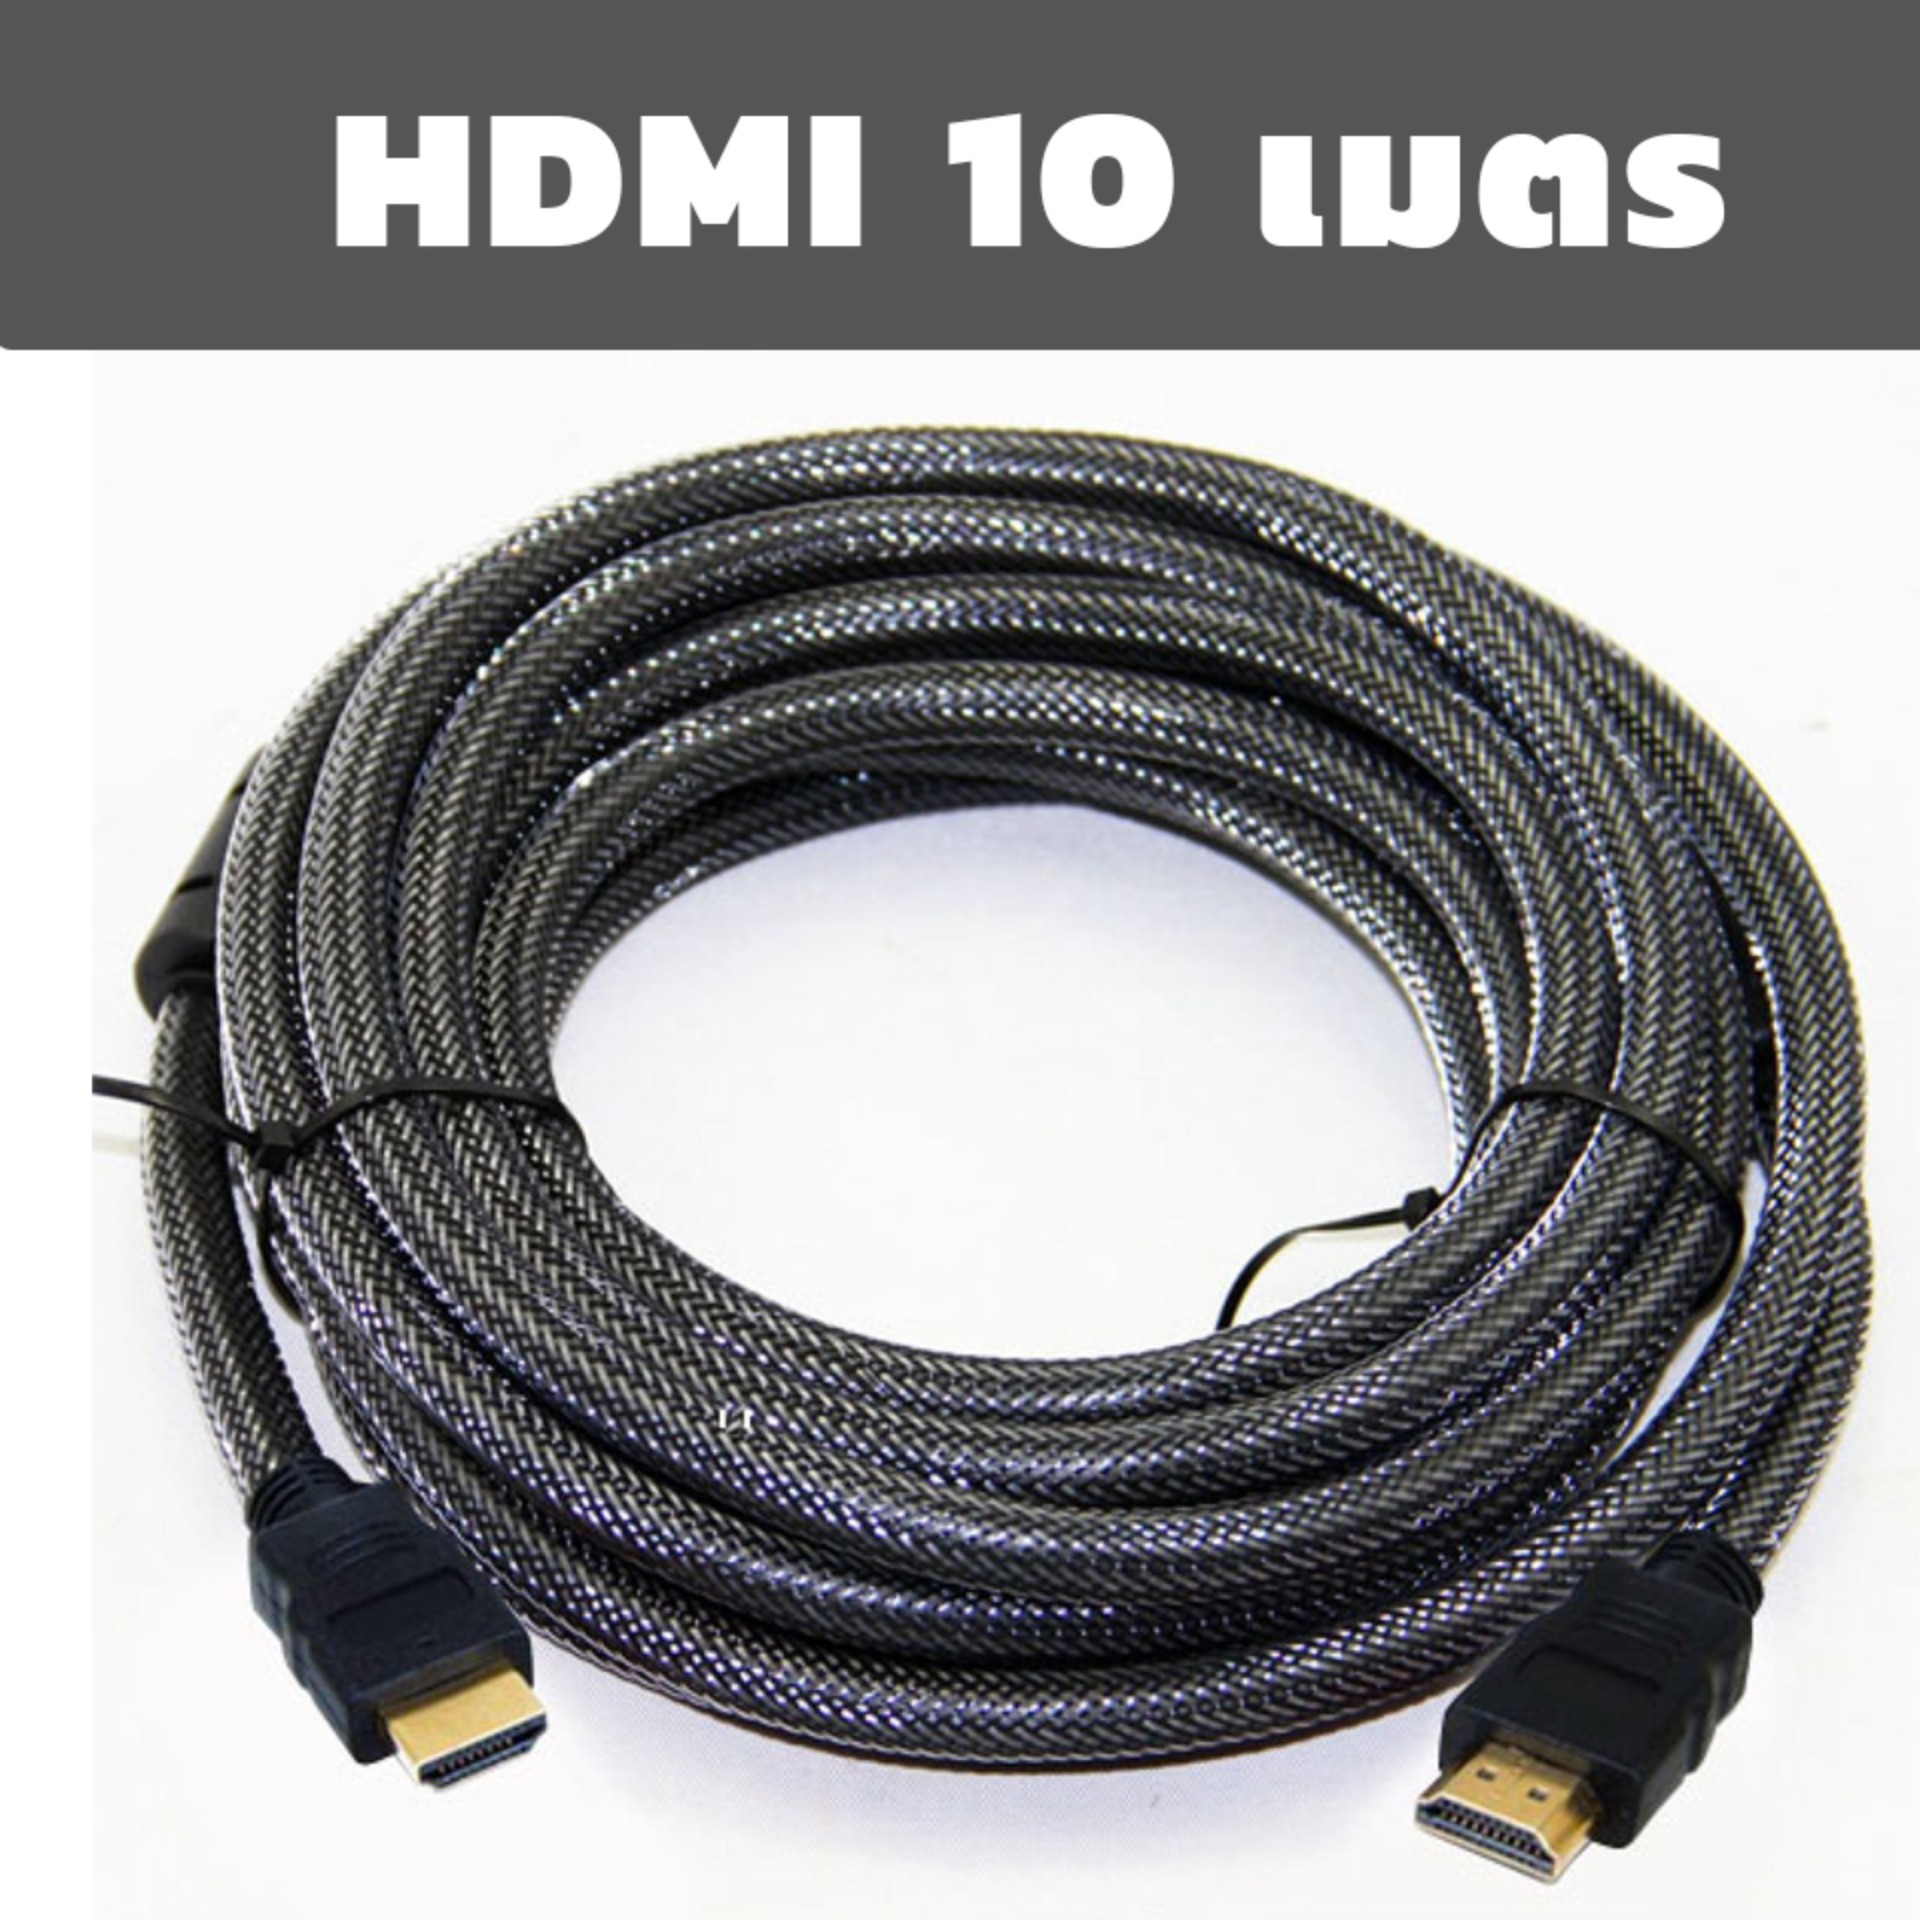 HDMI OP สาย HDMI ต่อภาพเสียงทีวี ยาว 10M เมตร v1.4 (Black)